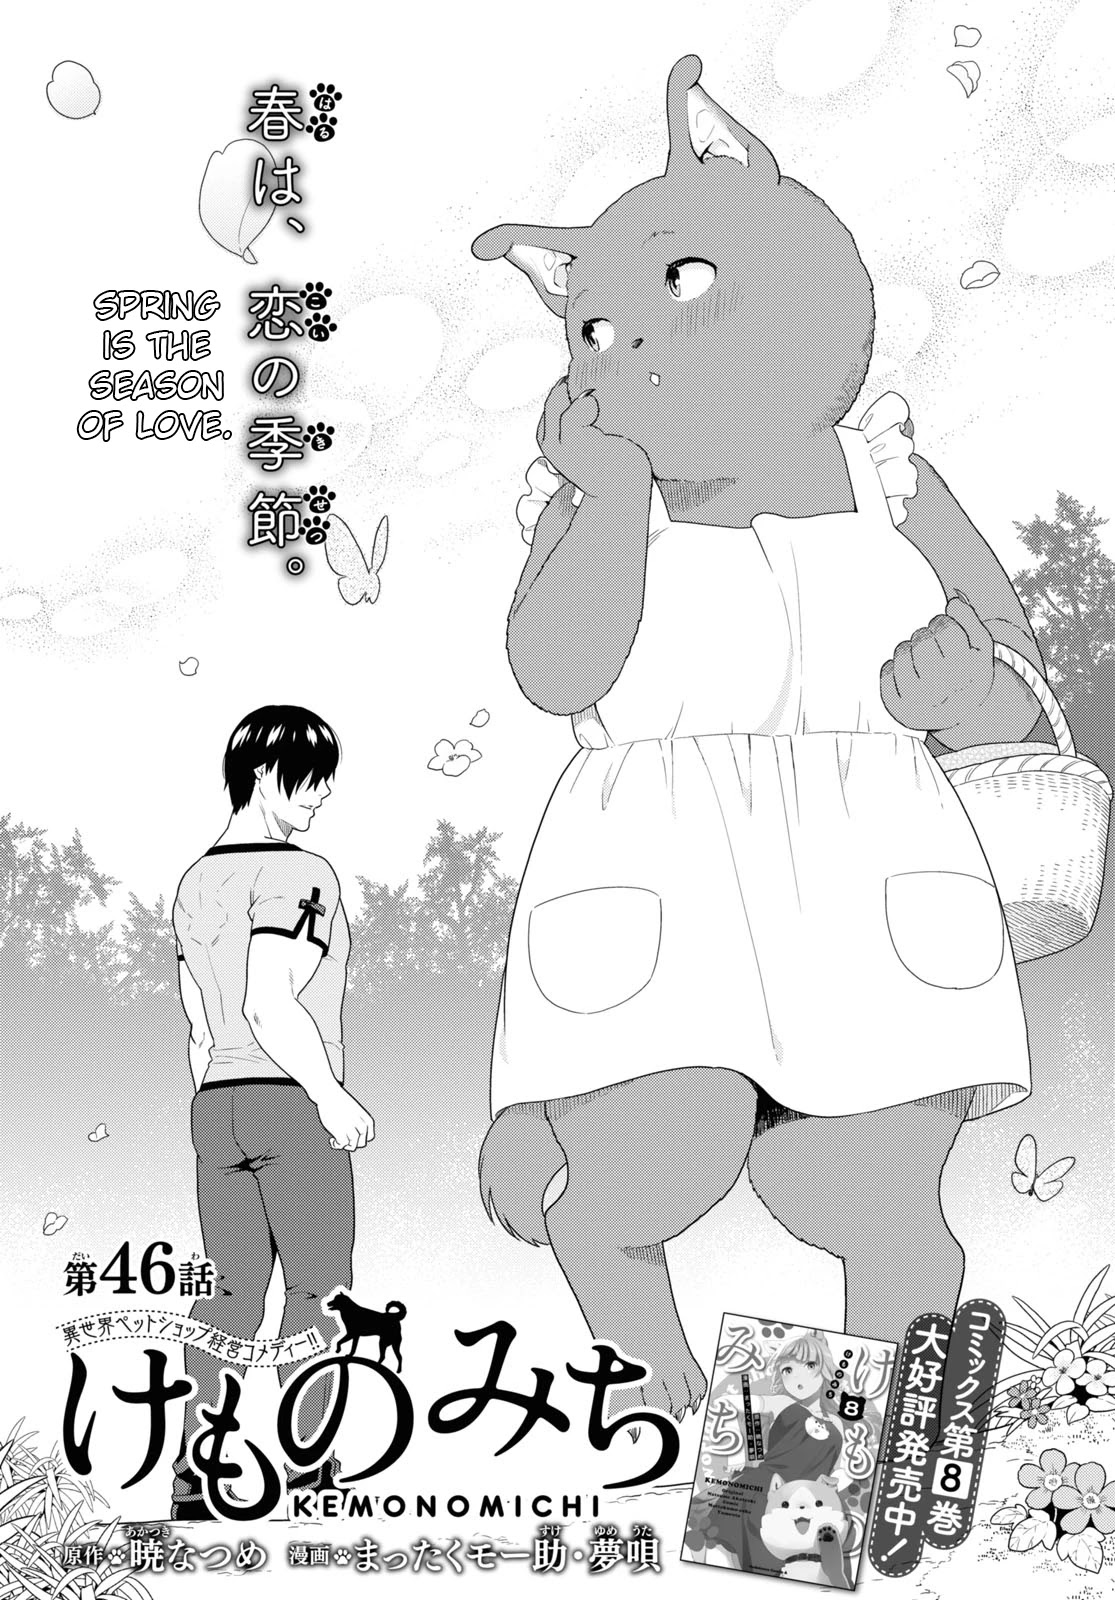 Kemono Michi (Natsume Akatsuki) Vol.9 Chapter 42: (Chapter 46) - Picture 2